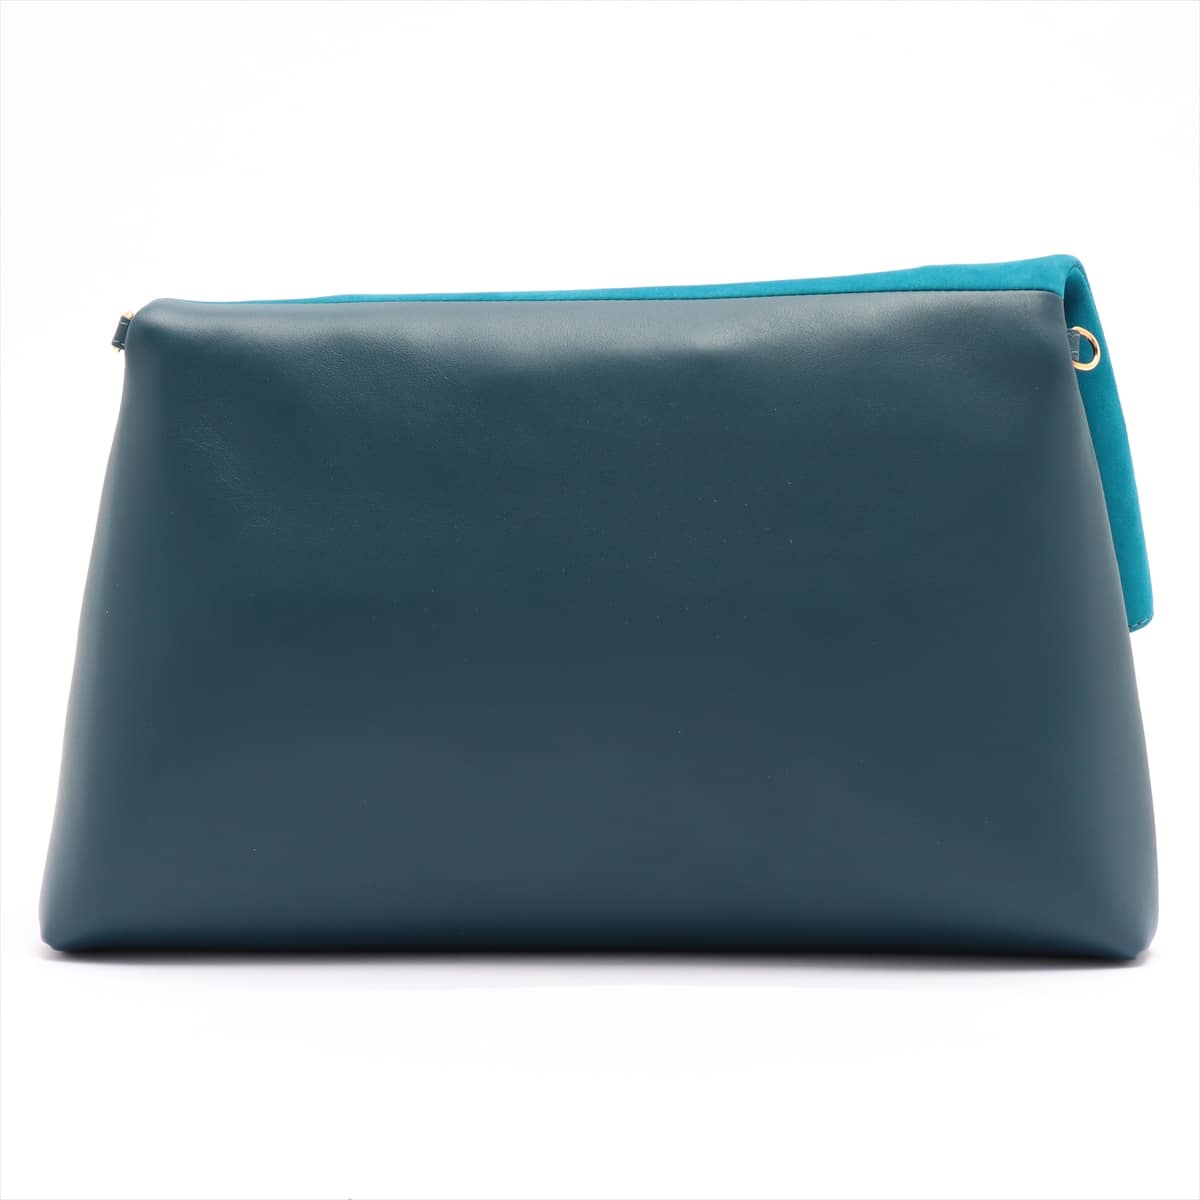 Chopard Lisbon Leather 2 WAY clutch bag Blue